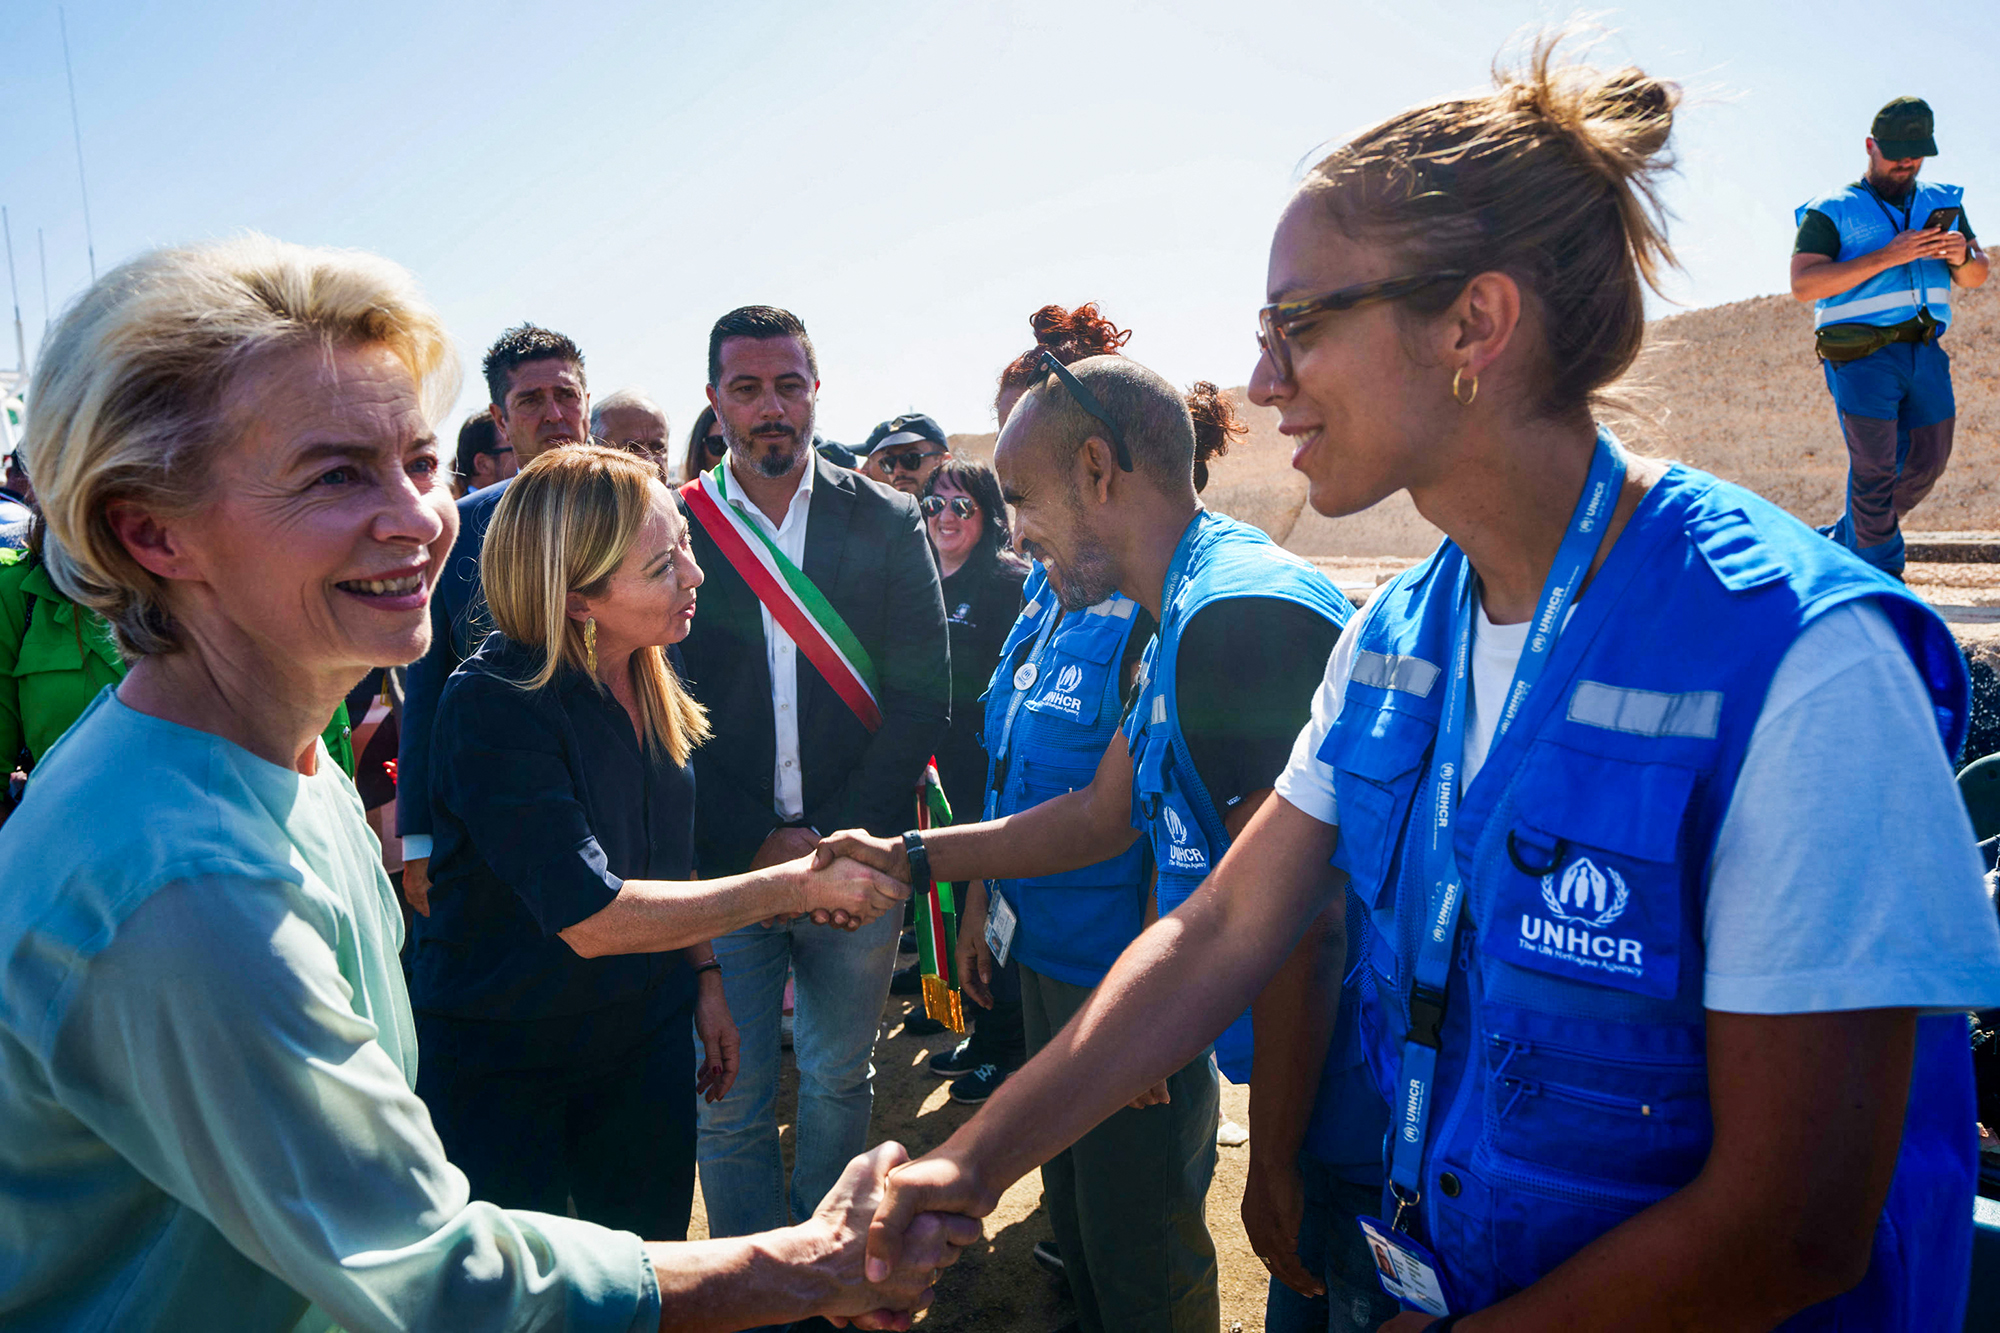 EU-Kommissionspräsidentin Ursula von der Leyen (l.), und Italiens Ministerpräsidentin Giorgia Meloni (2.v.l.) bei der Begrüßung von Mitgliedern des Hohen Flüchtlingskommissars der Vereinten Nationen (UNHCR) während ihres Besuchs auf der italienischen Insel Lampedusa (Bild: Handout/ANSA/AFP)